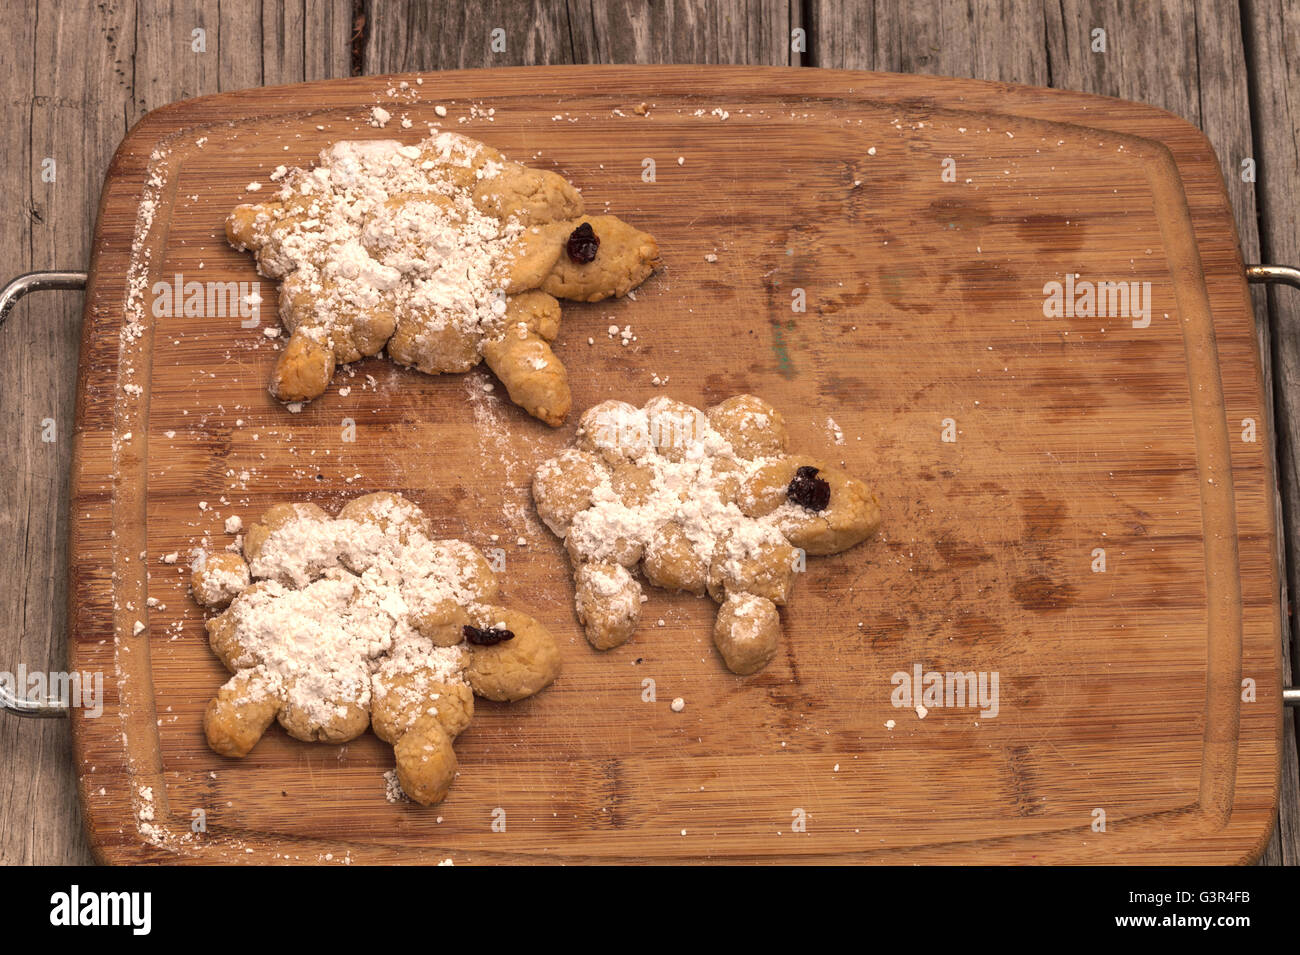 Brotbacken-Serie.  Brot-Schaf mit Puderzucker und getrockneten Kirschen Augen auf ein Holz Schneidebrett. Stockfoto